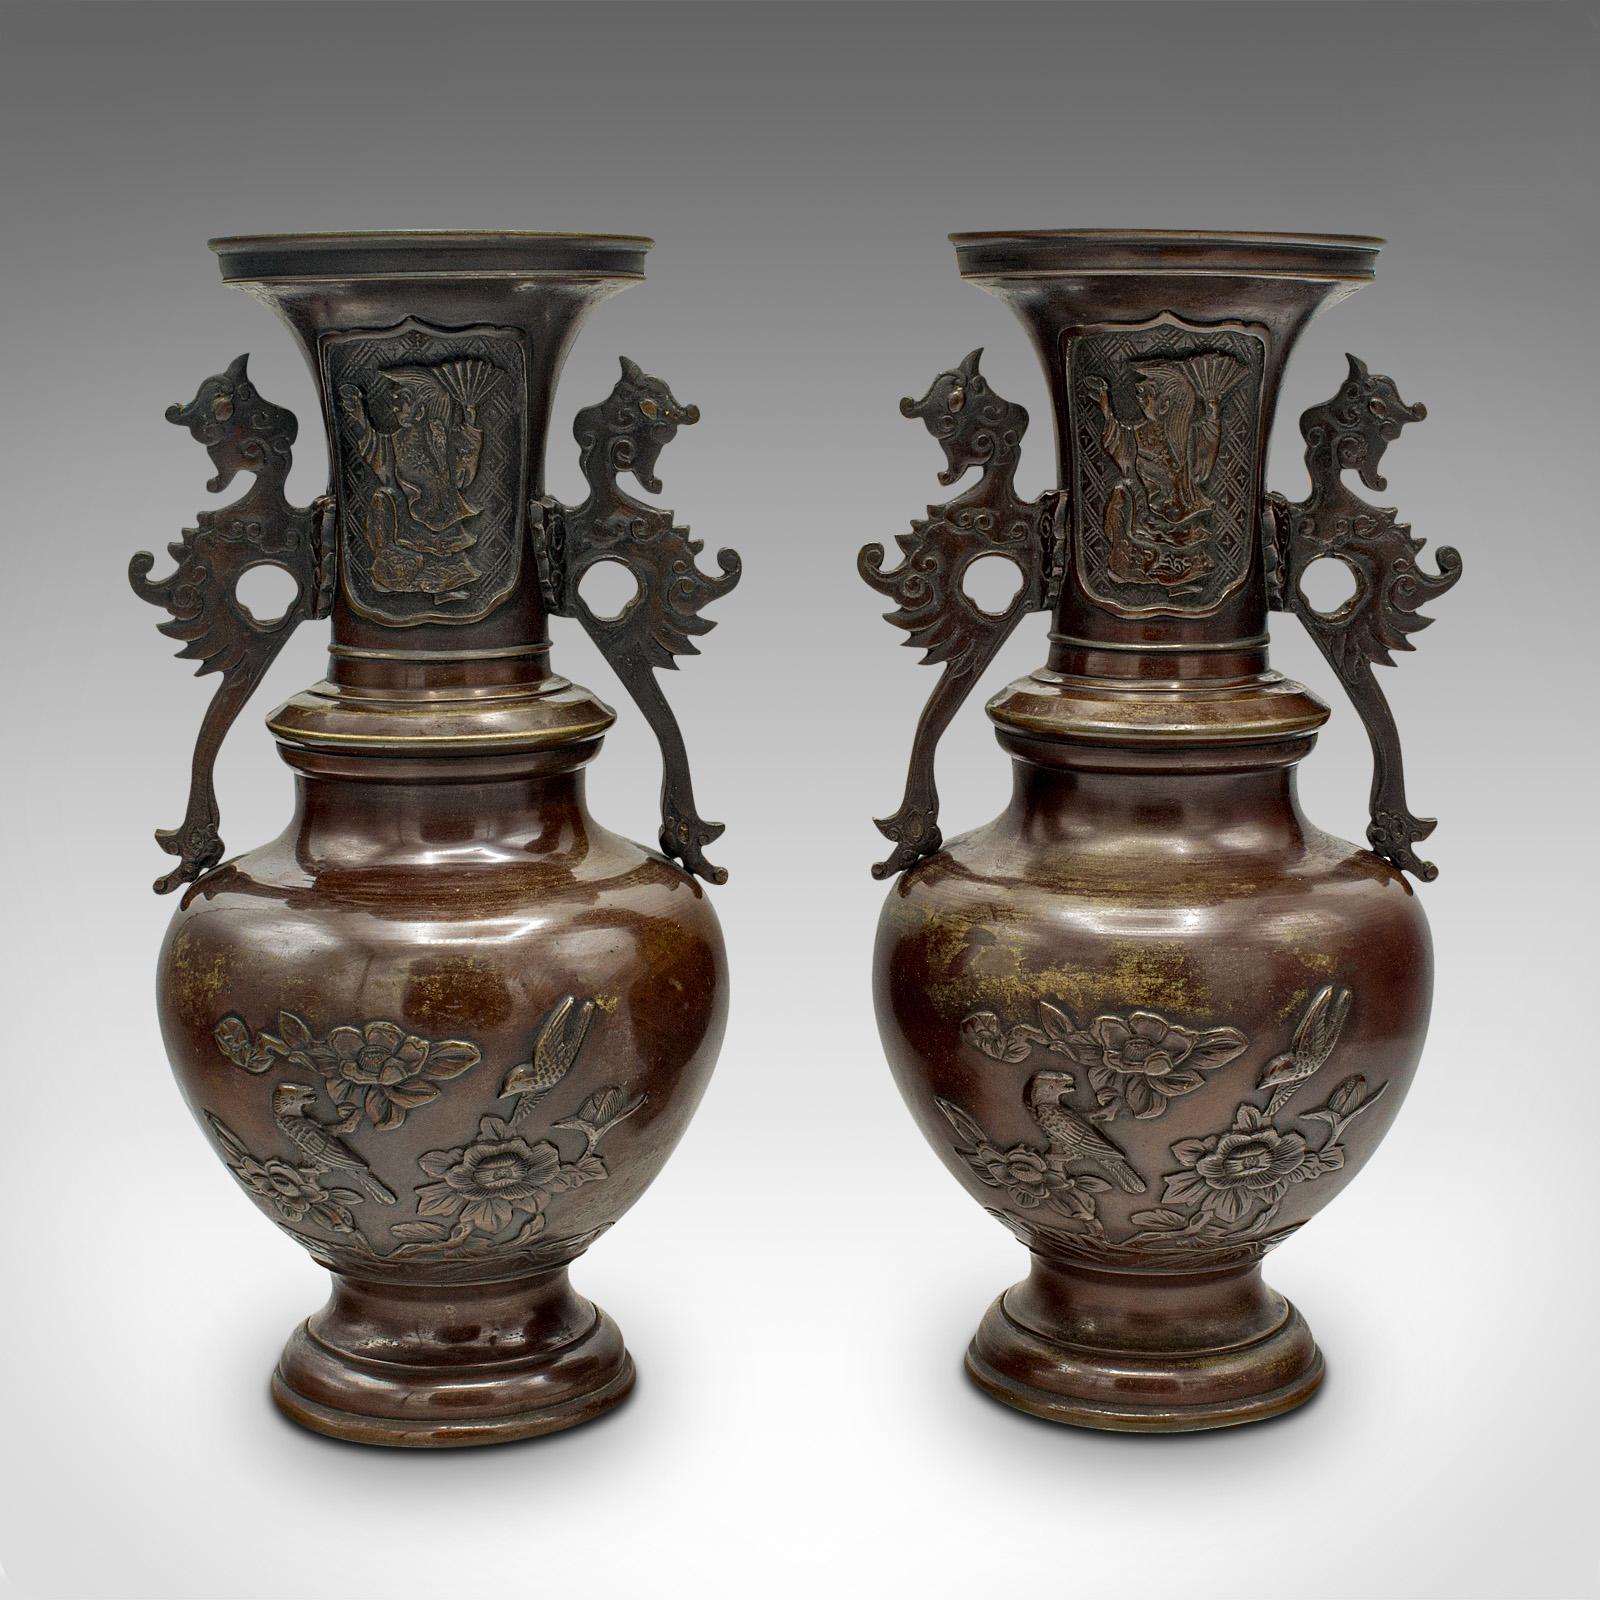 Il s'agit d'une paire d'urnes décoratives anciennes. Vase balustre japonais en bronze, datant de la période victorienne, vers 1850.

Ravissante paire de vases des dernières années de la période Edo
Présentant une patine vieillie souhaitable tout au